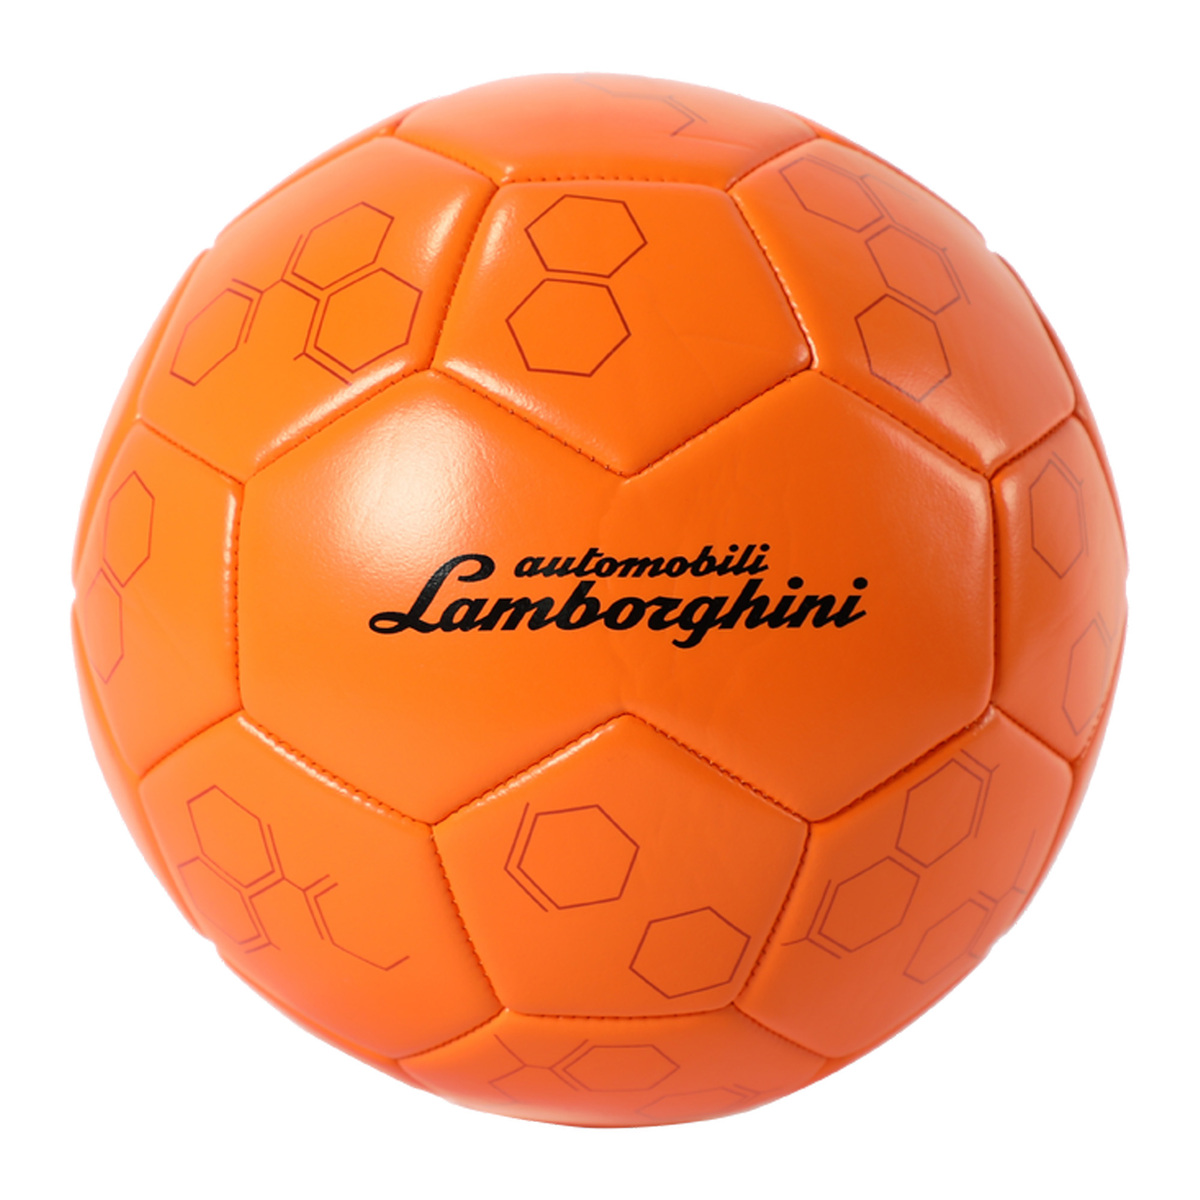 لامبورجيني كرة قدم مقاس 5 باللون البرتقالي، LFB552-5O